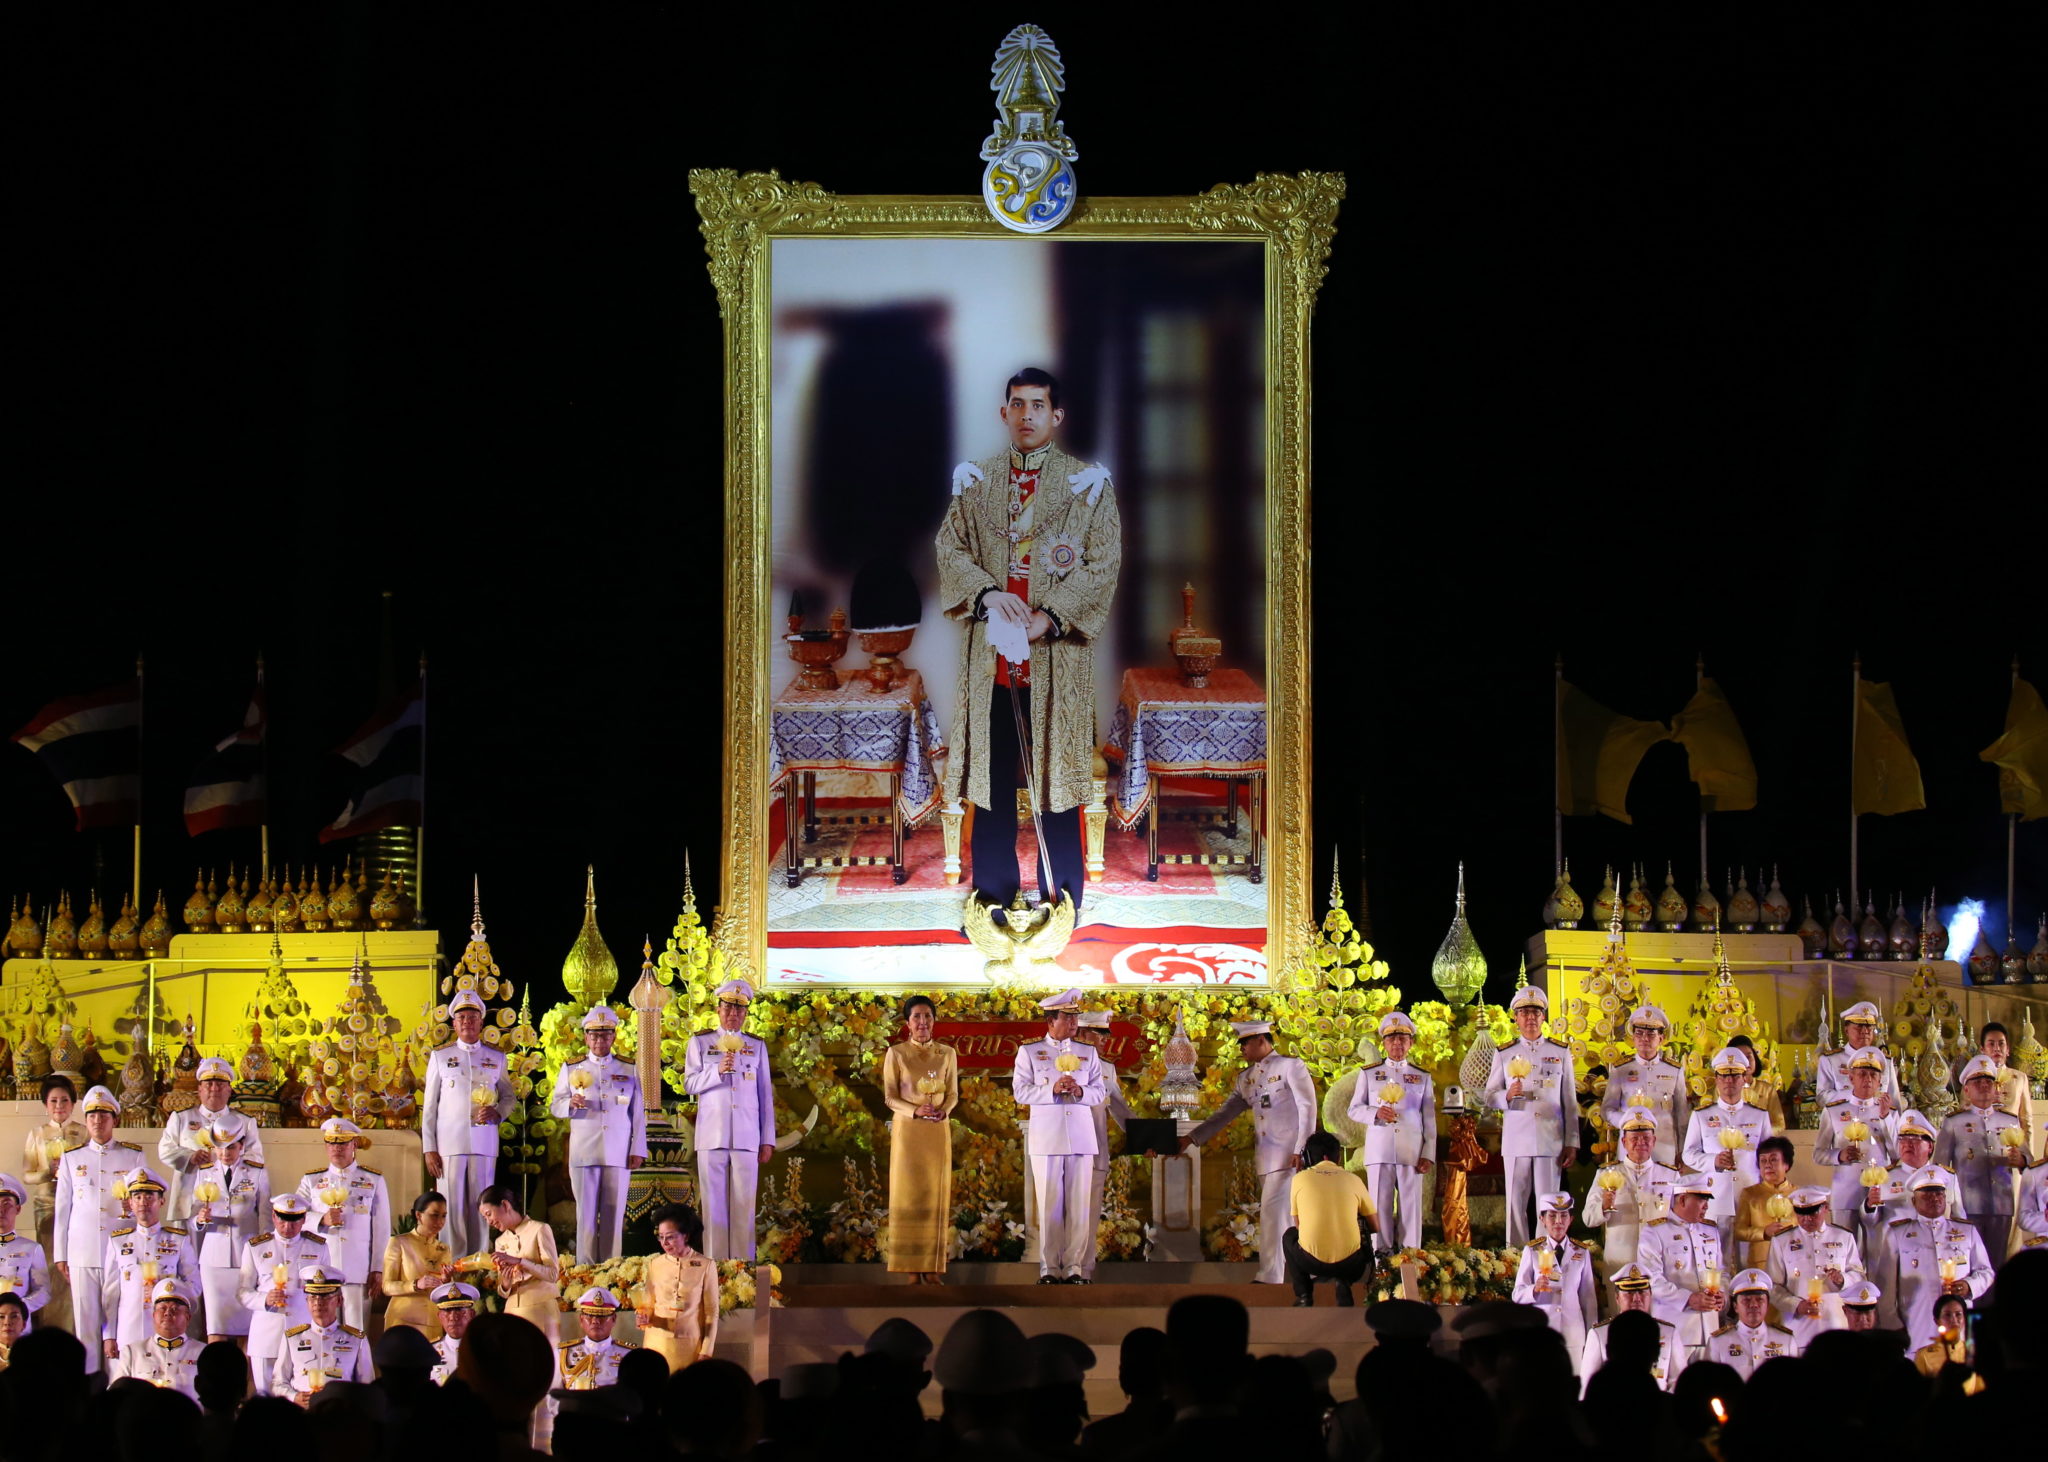 Tajlandia: Premier Prayut Chan-o-cha i jego żona zapalają świecę przed ogromnym portretem królaTajlandii  podczas ceremonii upamiętniającej jego 67. urodziny w Sanam Luang w Bangkoku. Fot. NARONG SANGNAK, PAP/EPA.